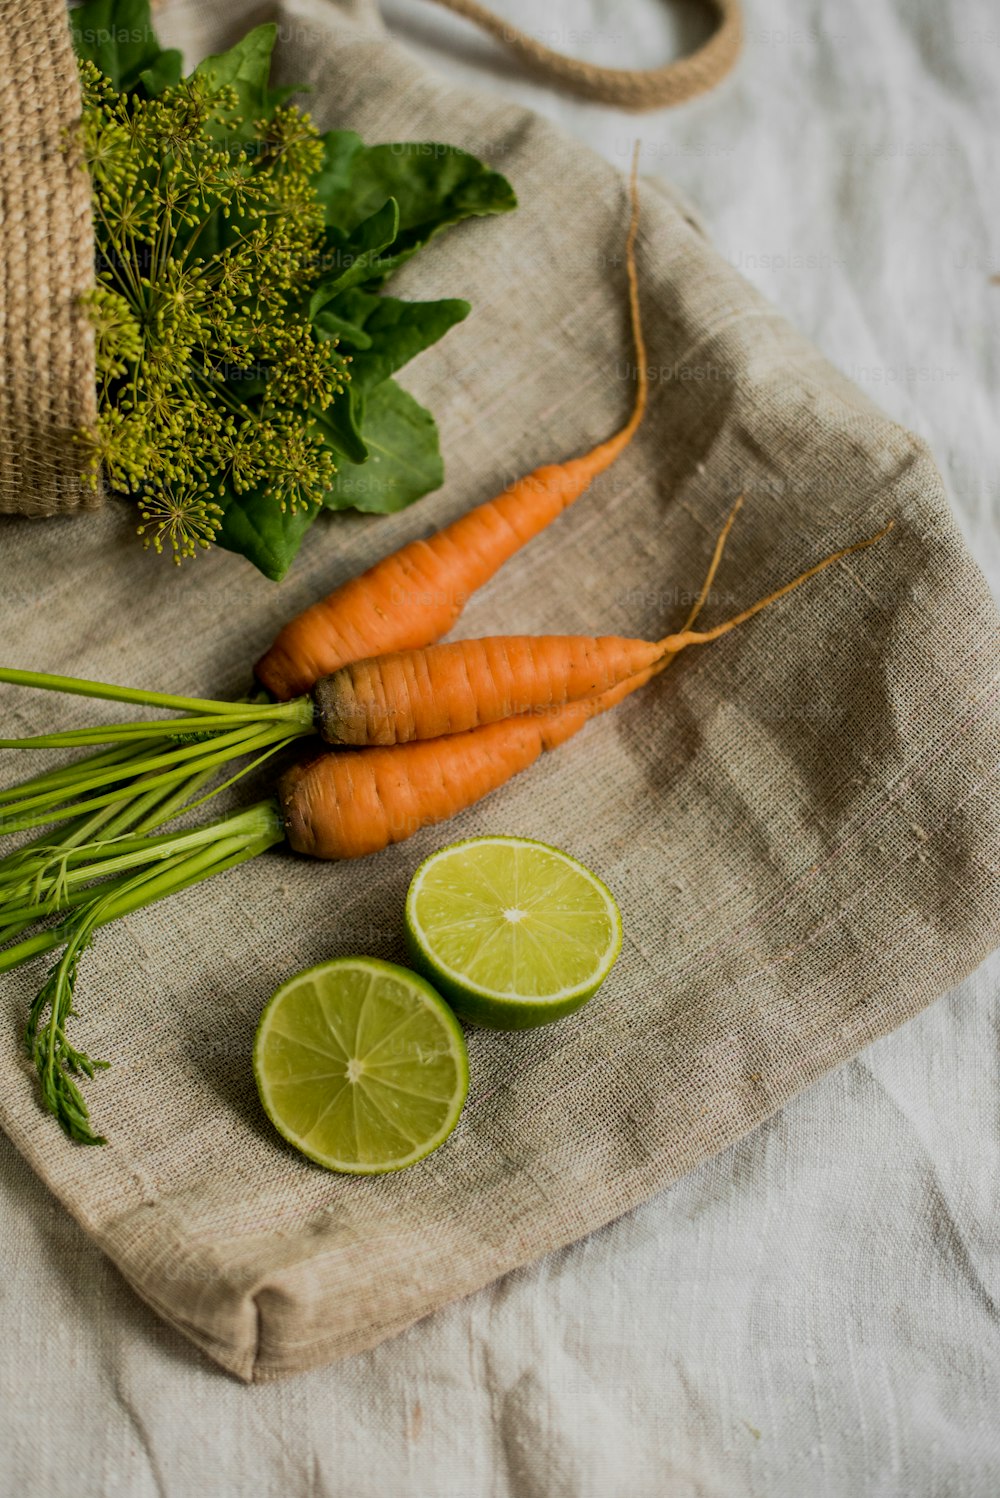 Karotten, Brokkoli und Limetten auf einem Tuch